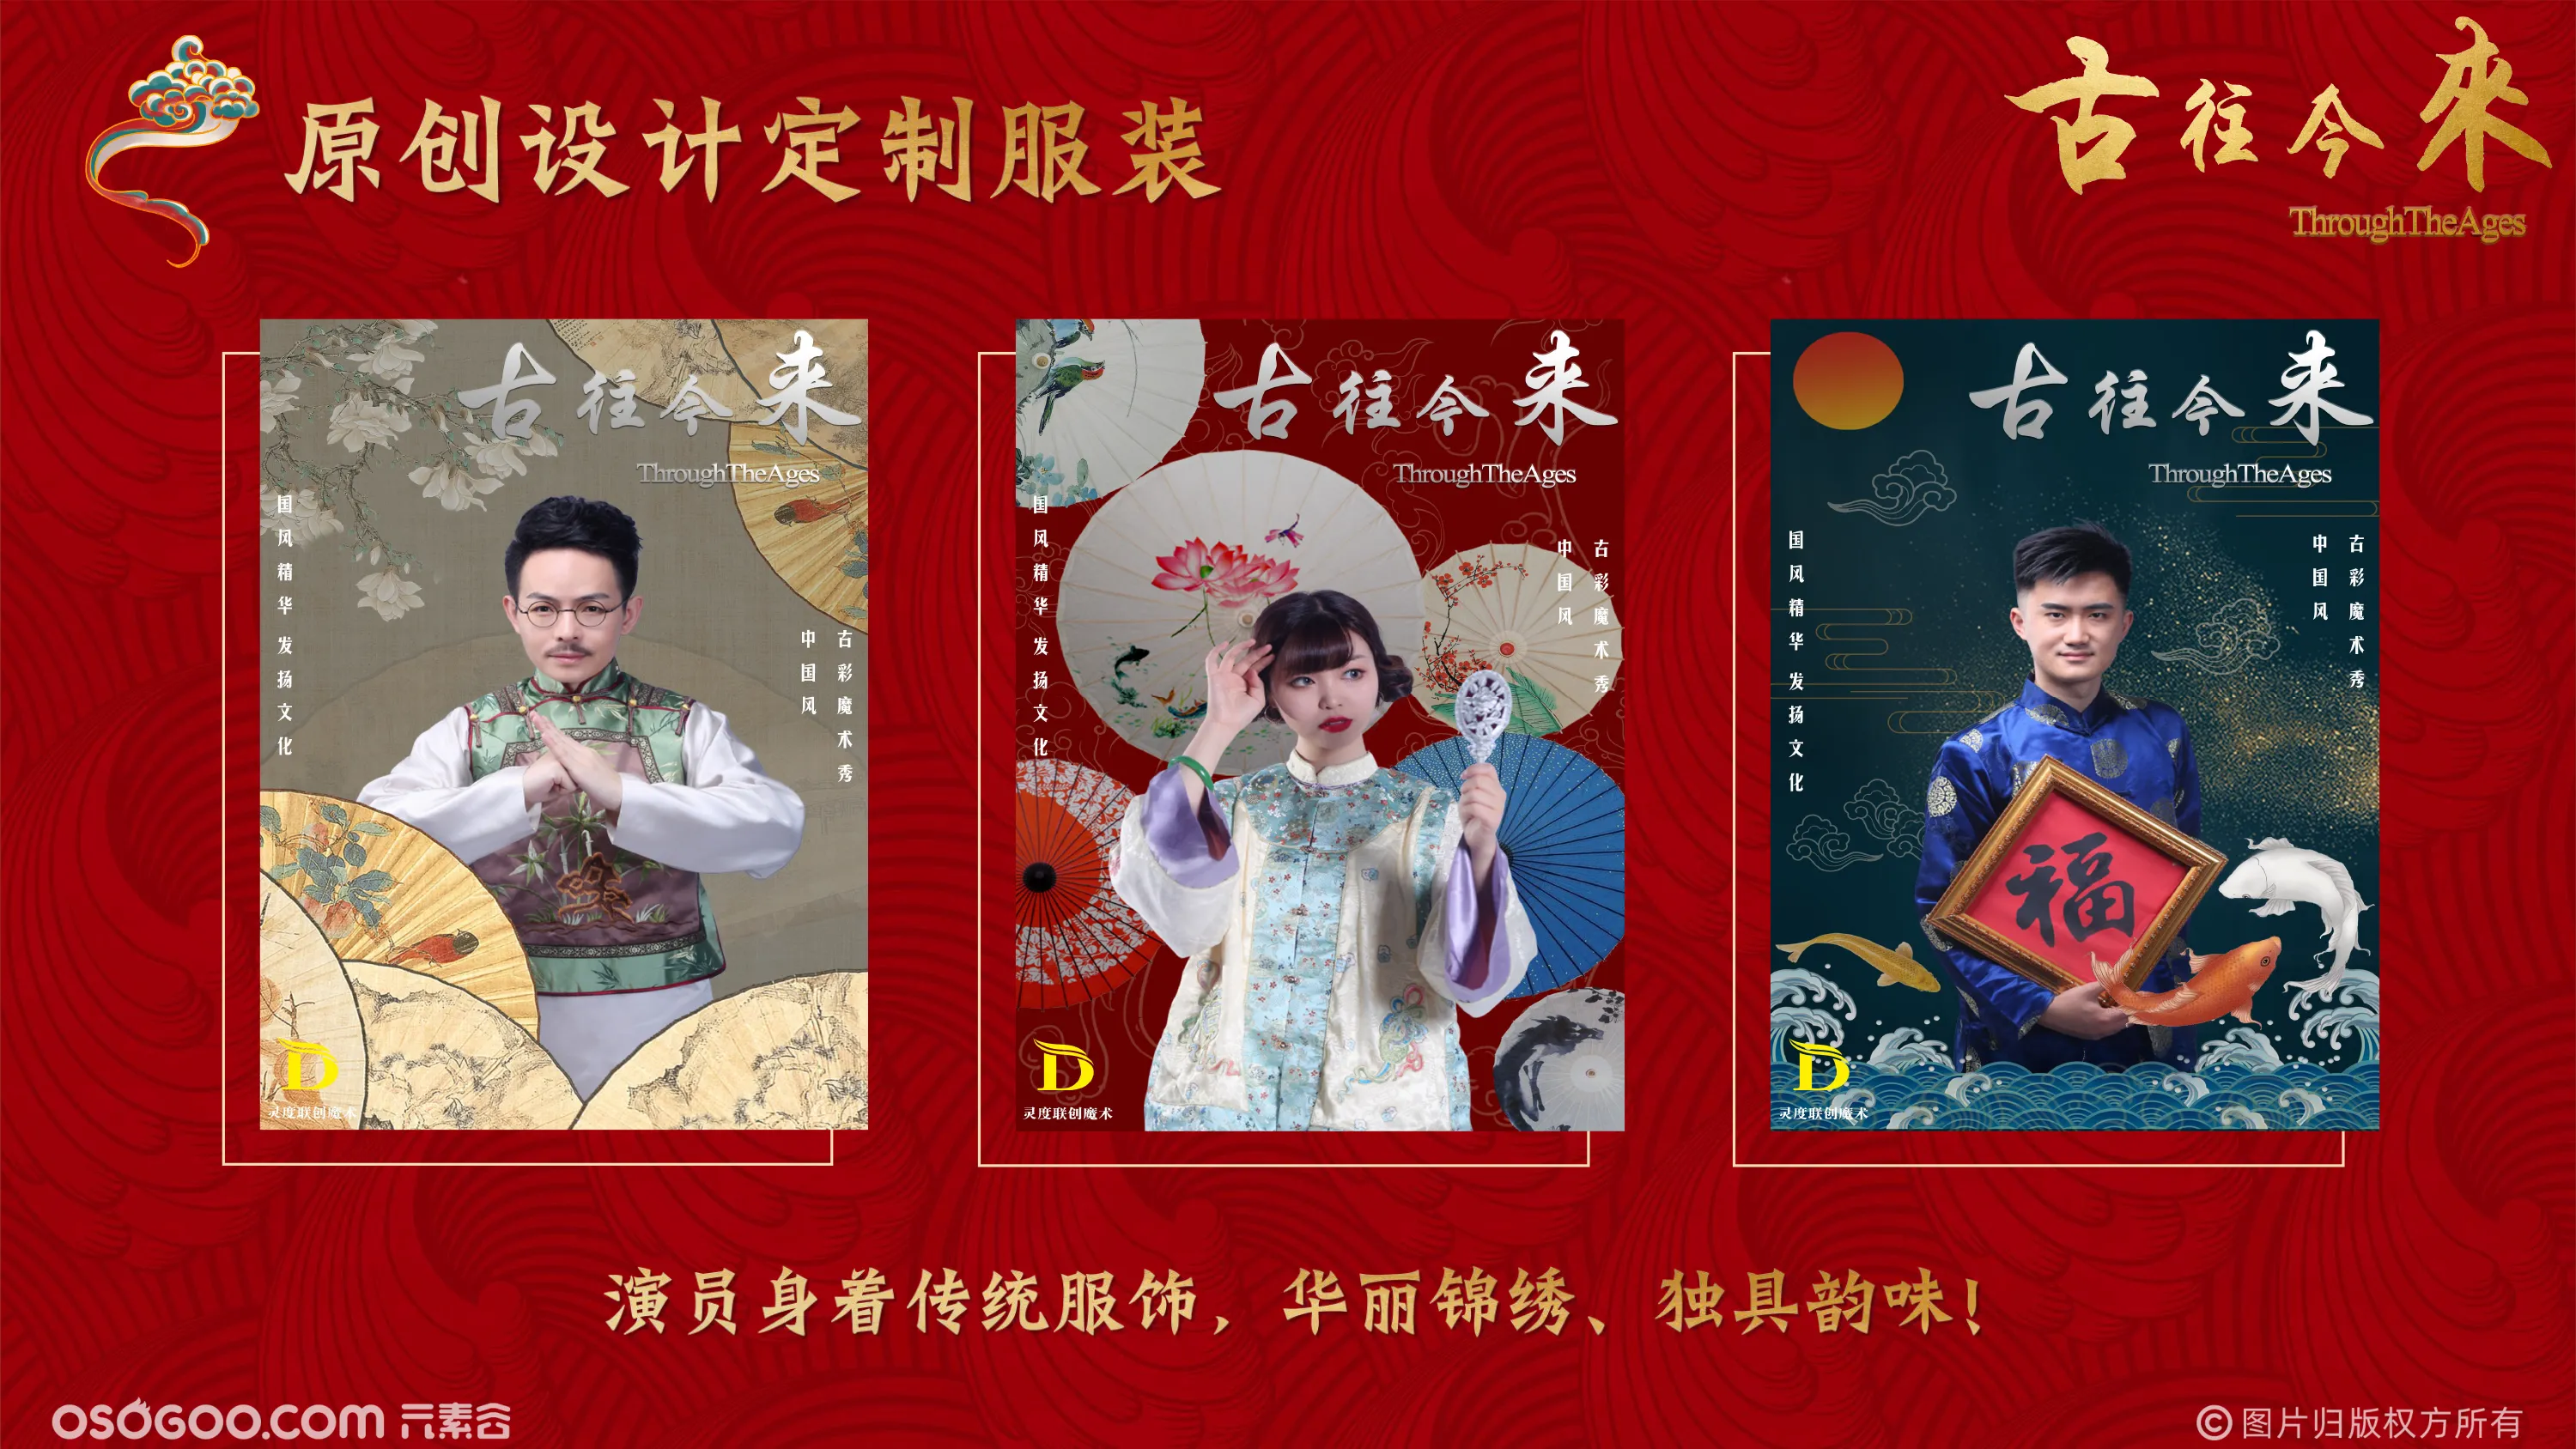 《古往今来》中国首部非遗戏法国潮魔术专场秀